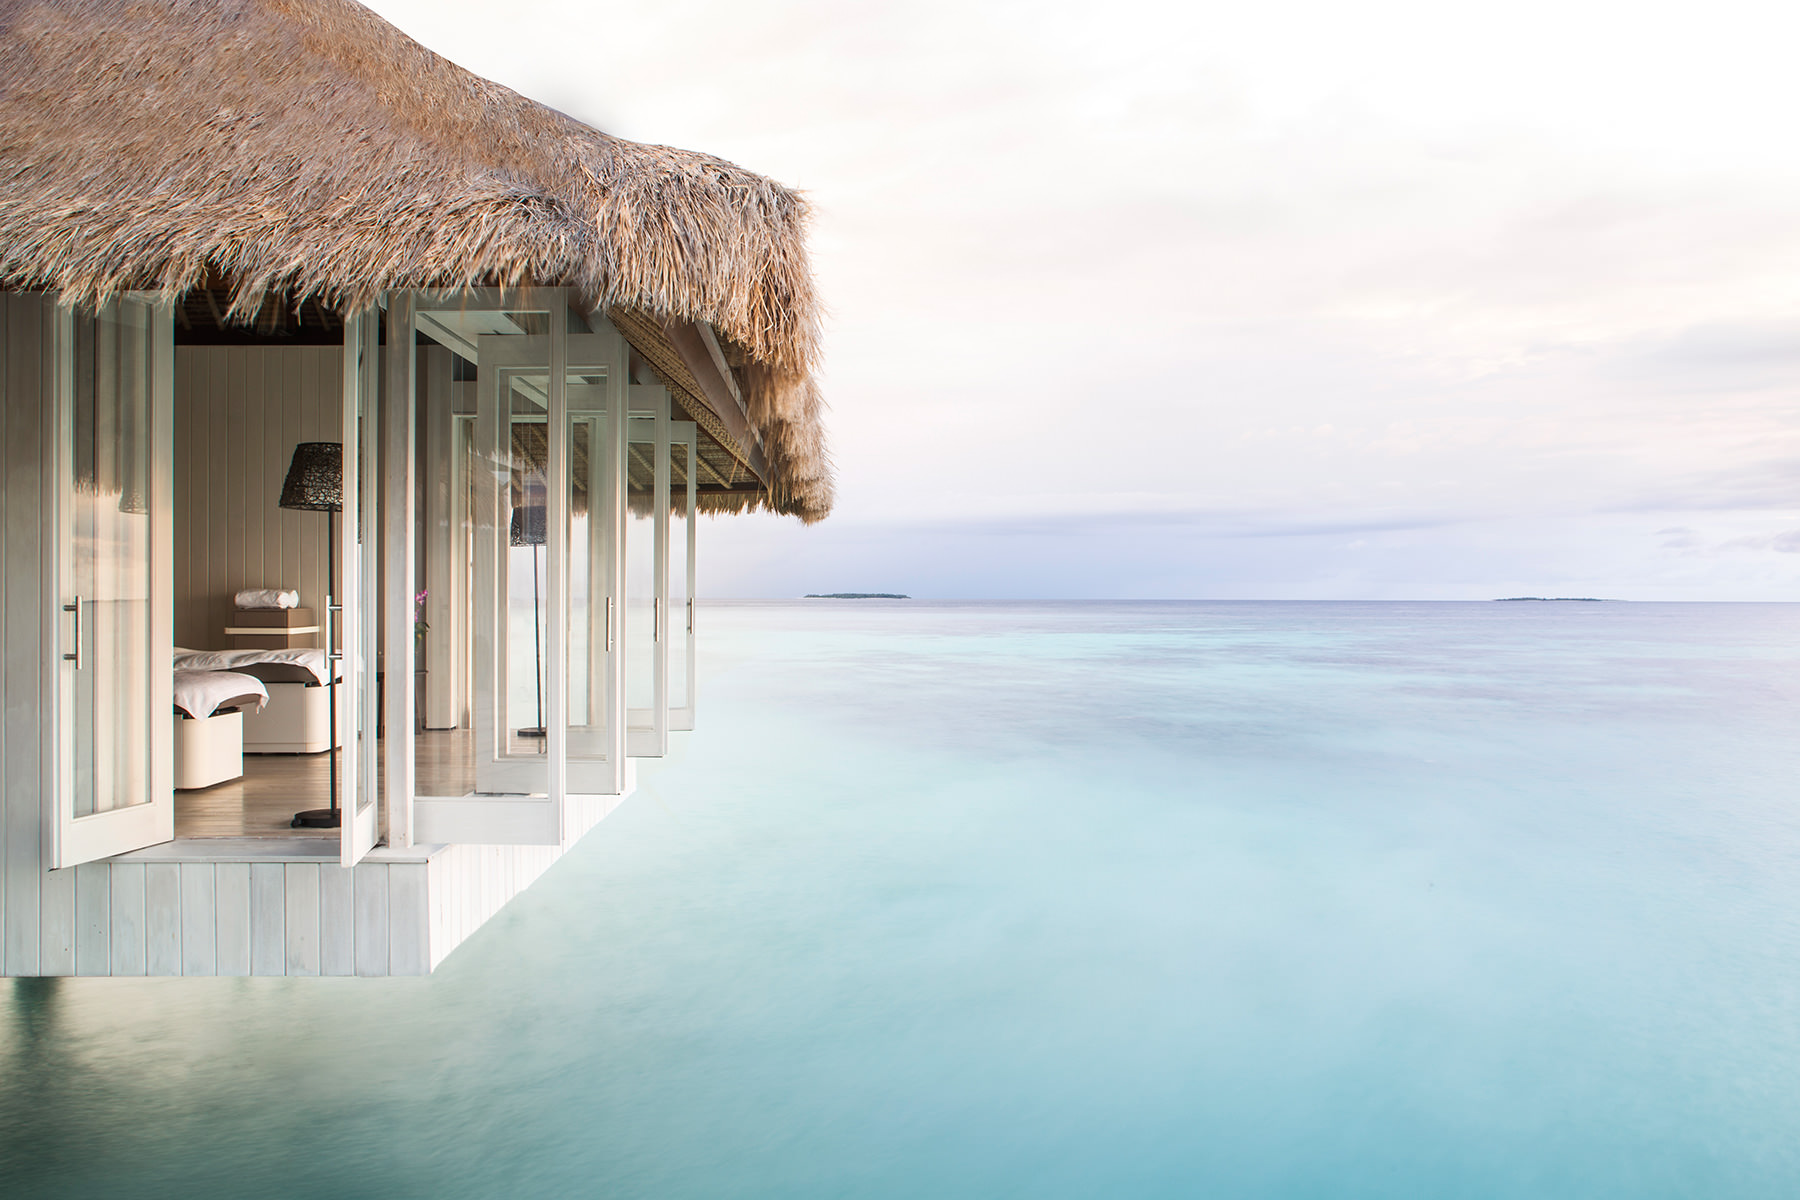 Hitta resor till exklusiva resorts på Maldiverna. Lyxresor och exklusiva resor.